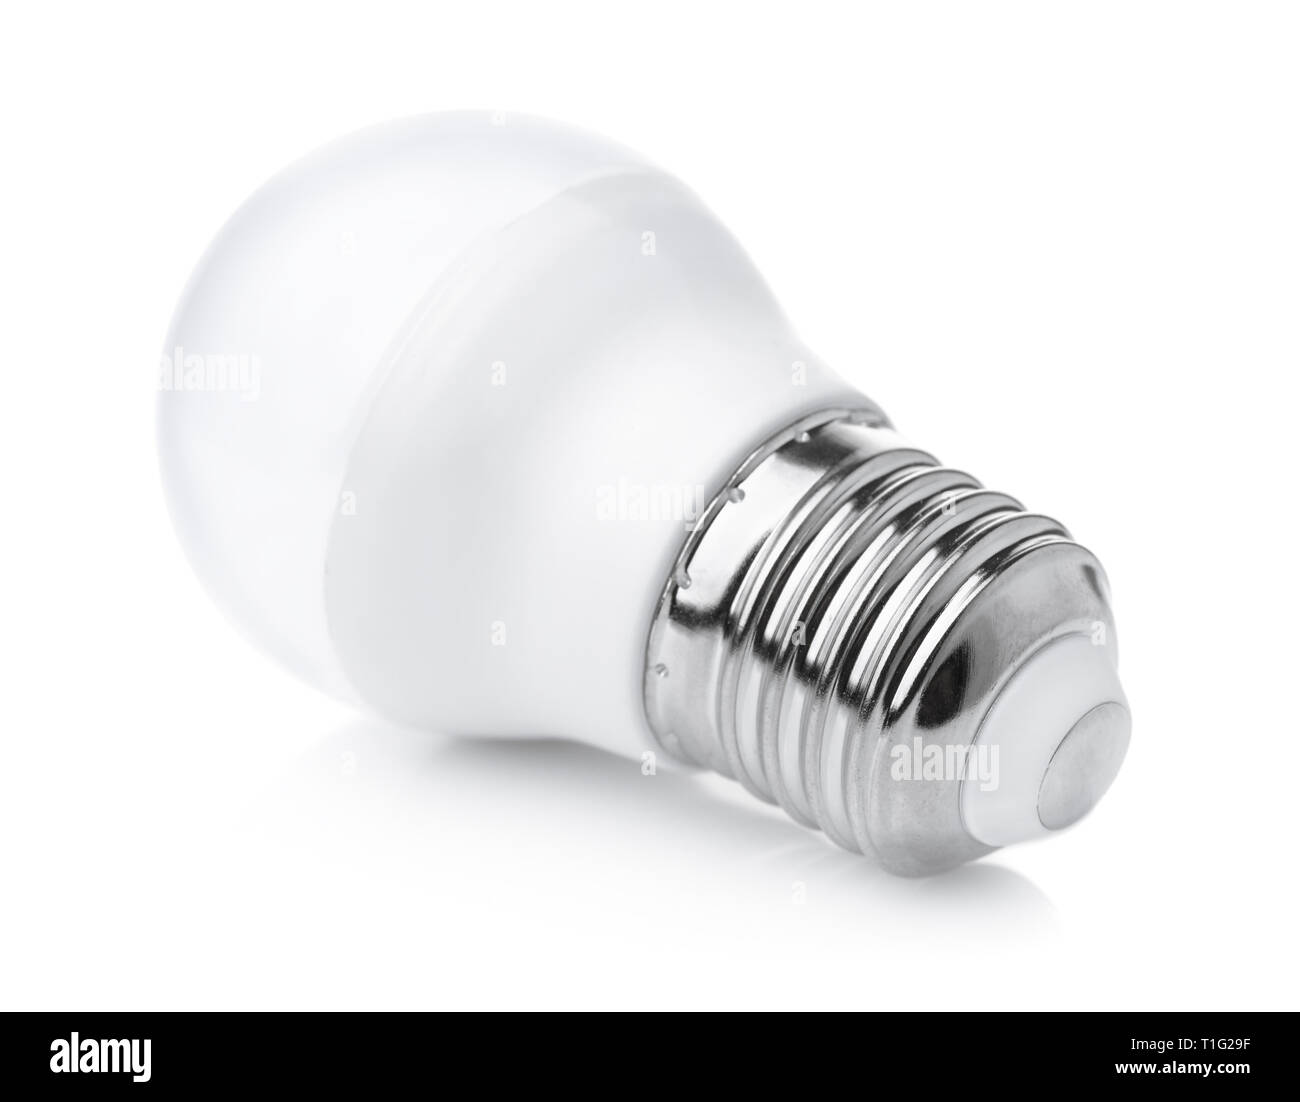 LED light bulb isolated on white Stock Photo